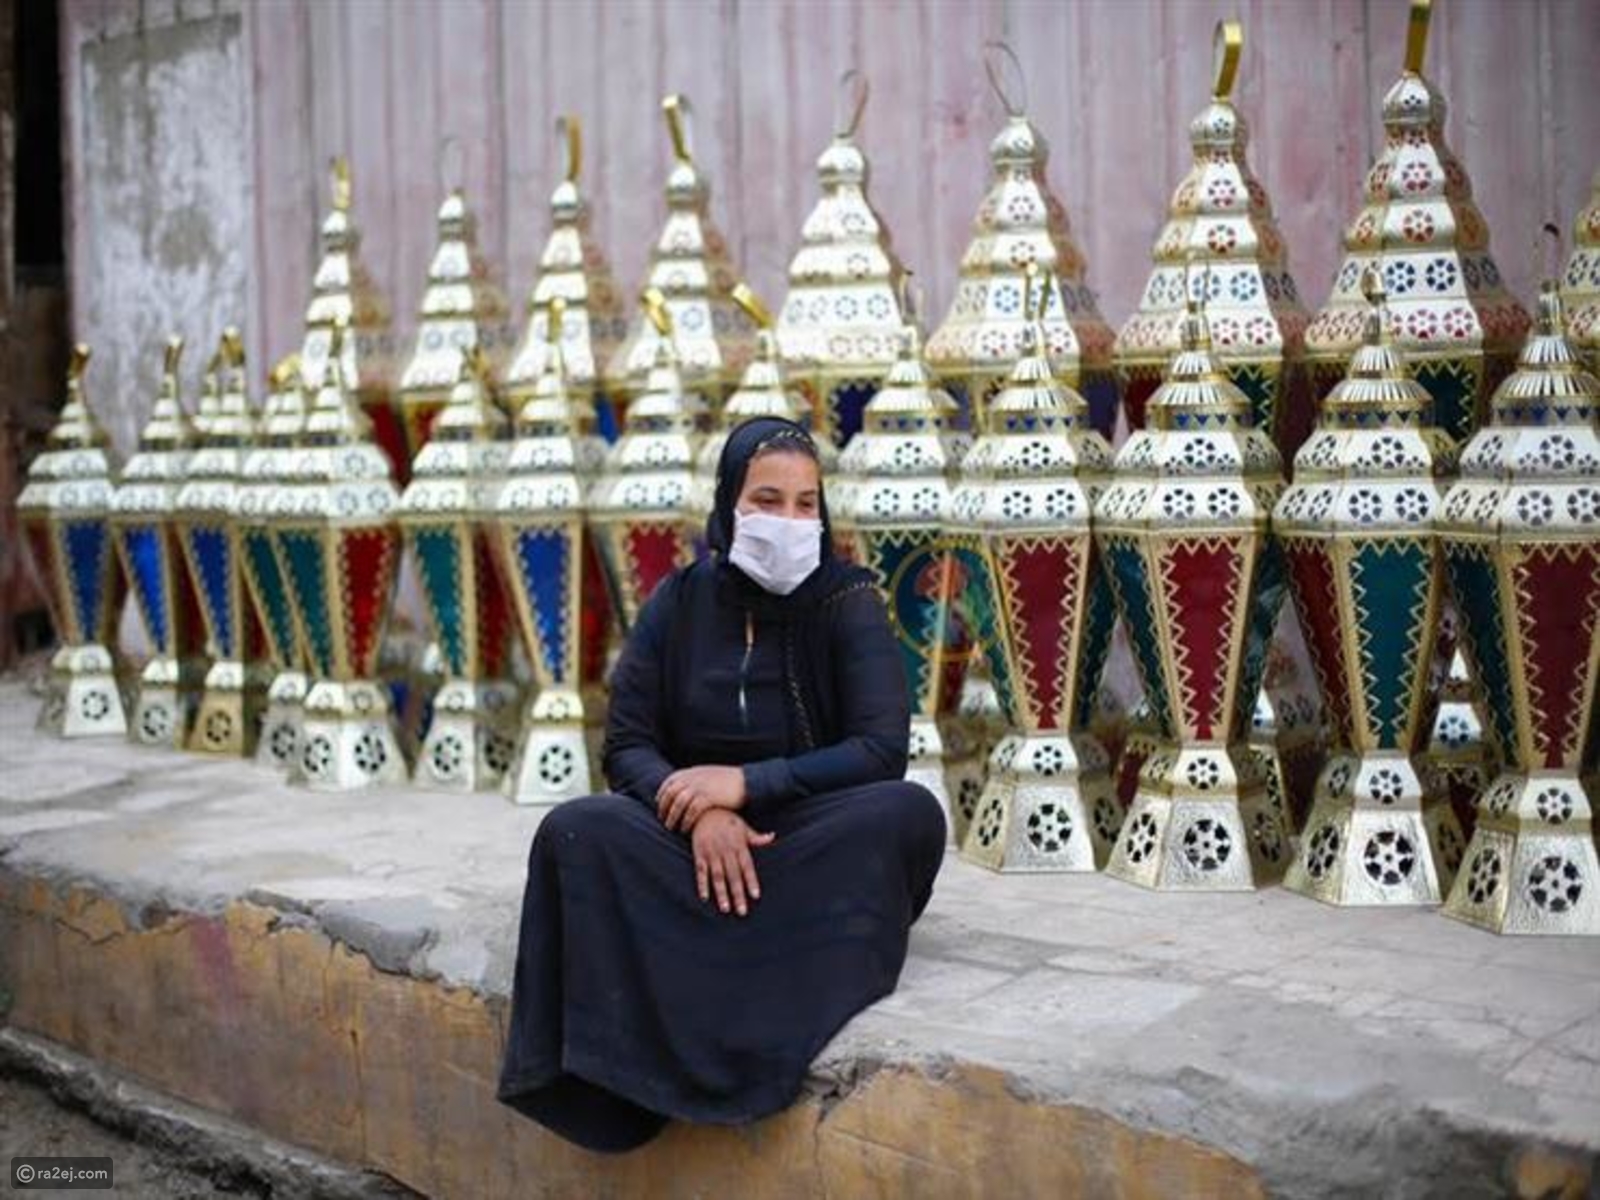 سيدة مصرية تجلس أمام الفوانيس وتضع الكمامة